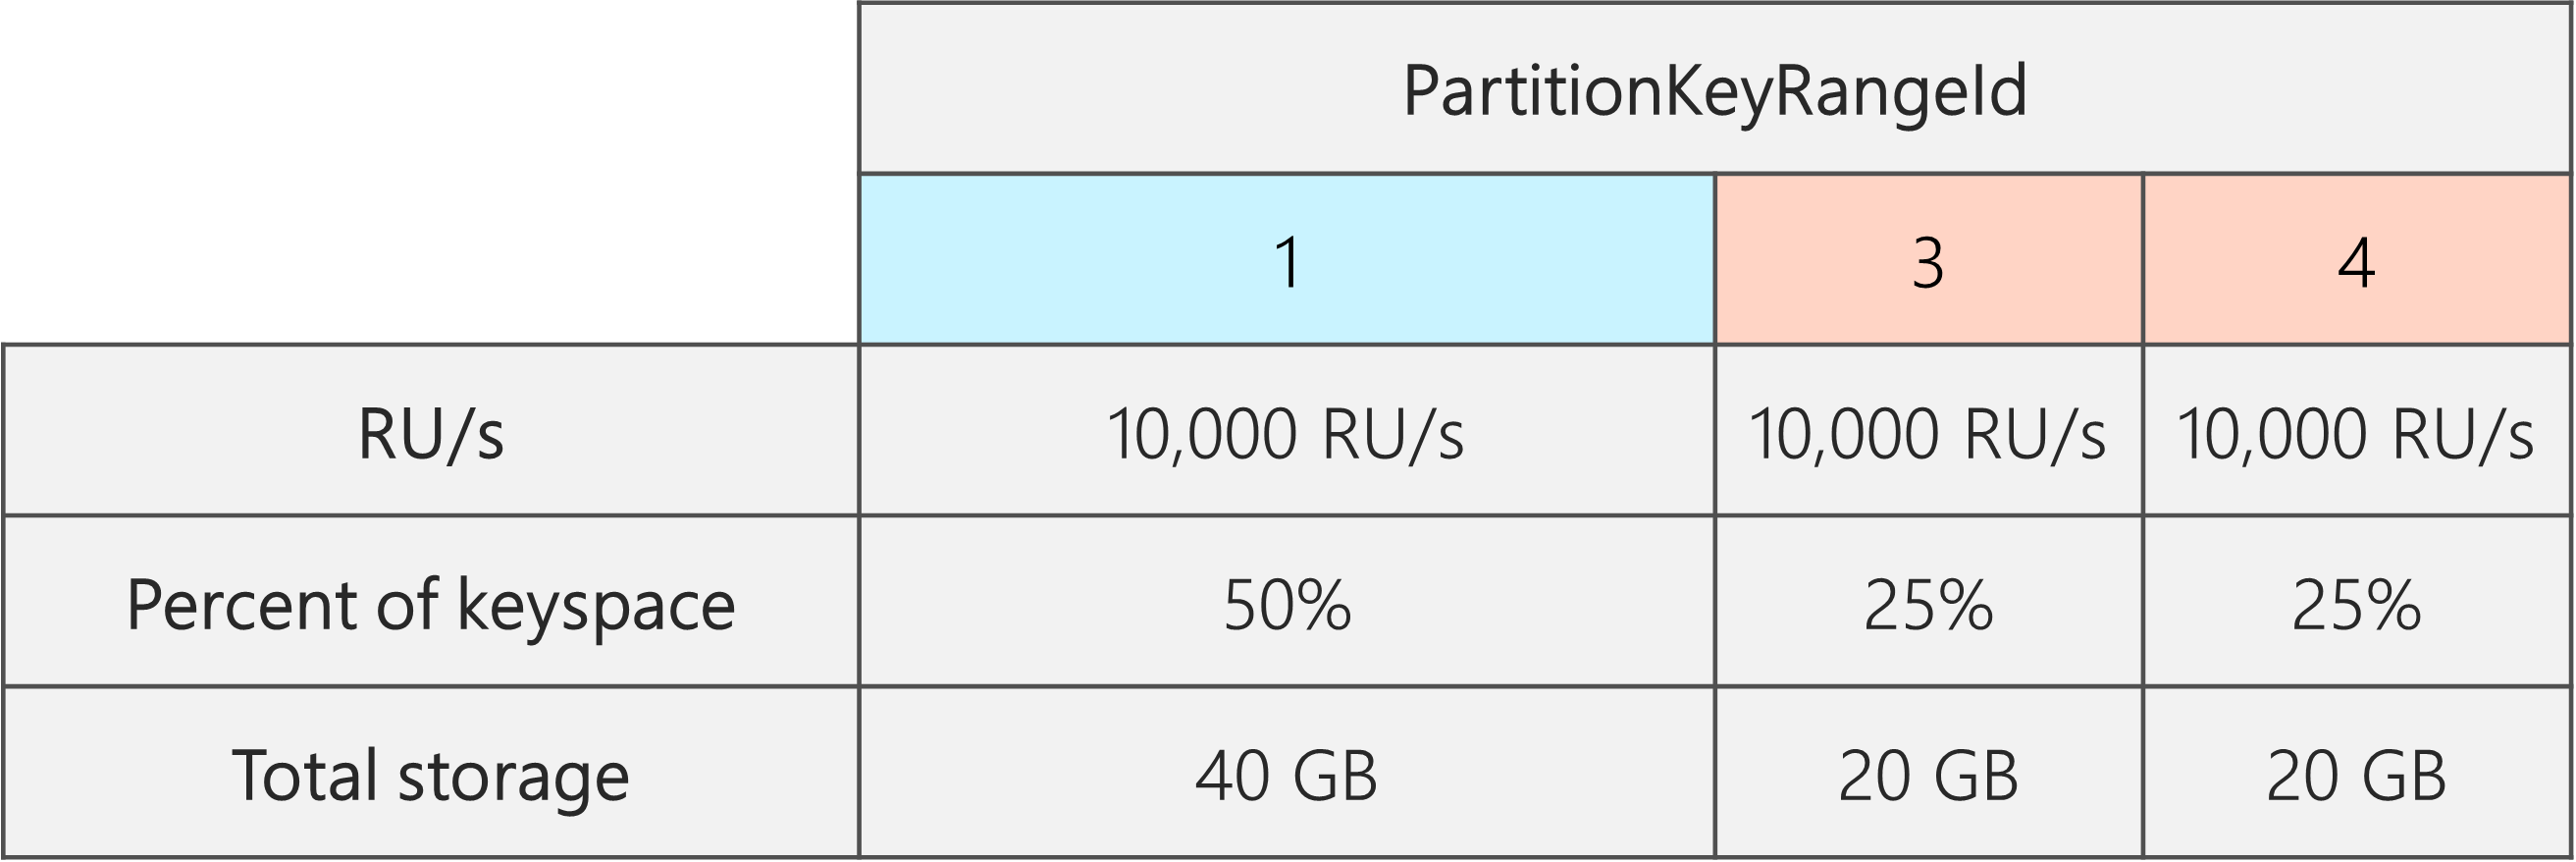 Después de la división, hay 3 PartitionKeyRangeIds, cada uno con 10 000 RU/s. Sin embargo, uno de los PartitionKeyRangeIds tiene el 50 % del espacio de claves total (25 GB), mientras que dos de los partitionKeyRangeIds tienen el 25 % del espacio de claves total (20 GB)